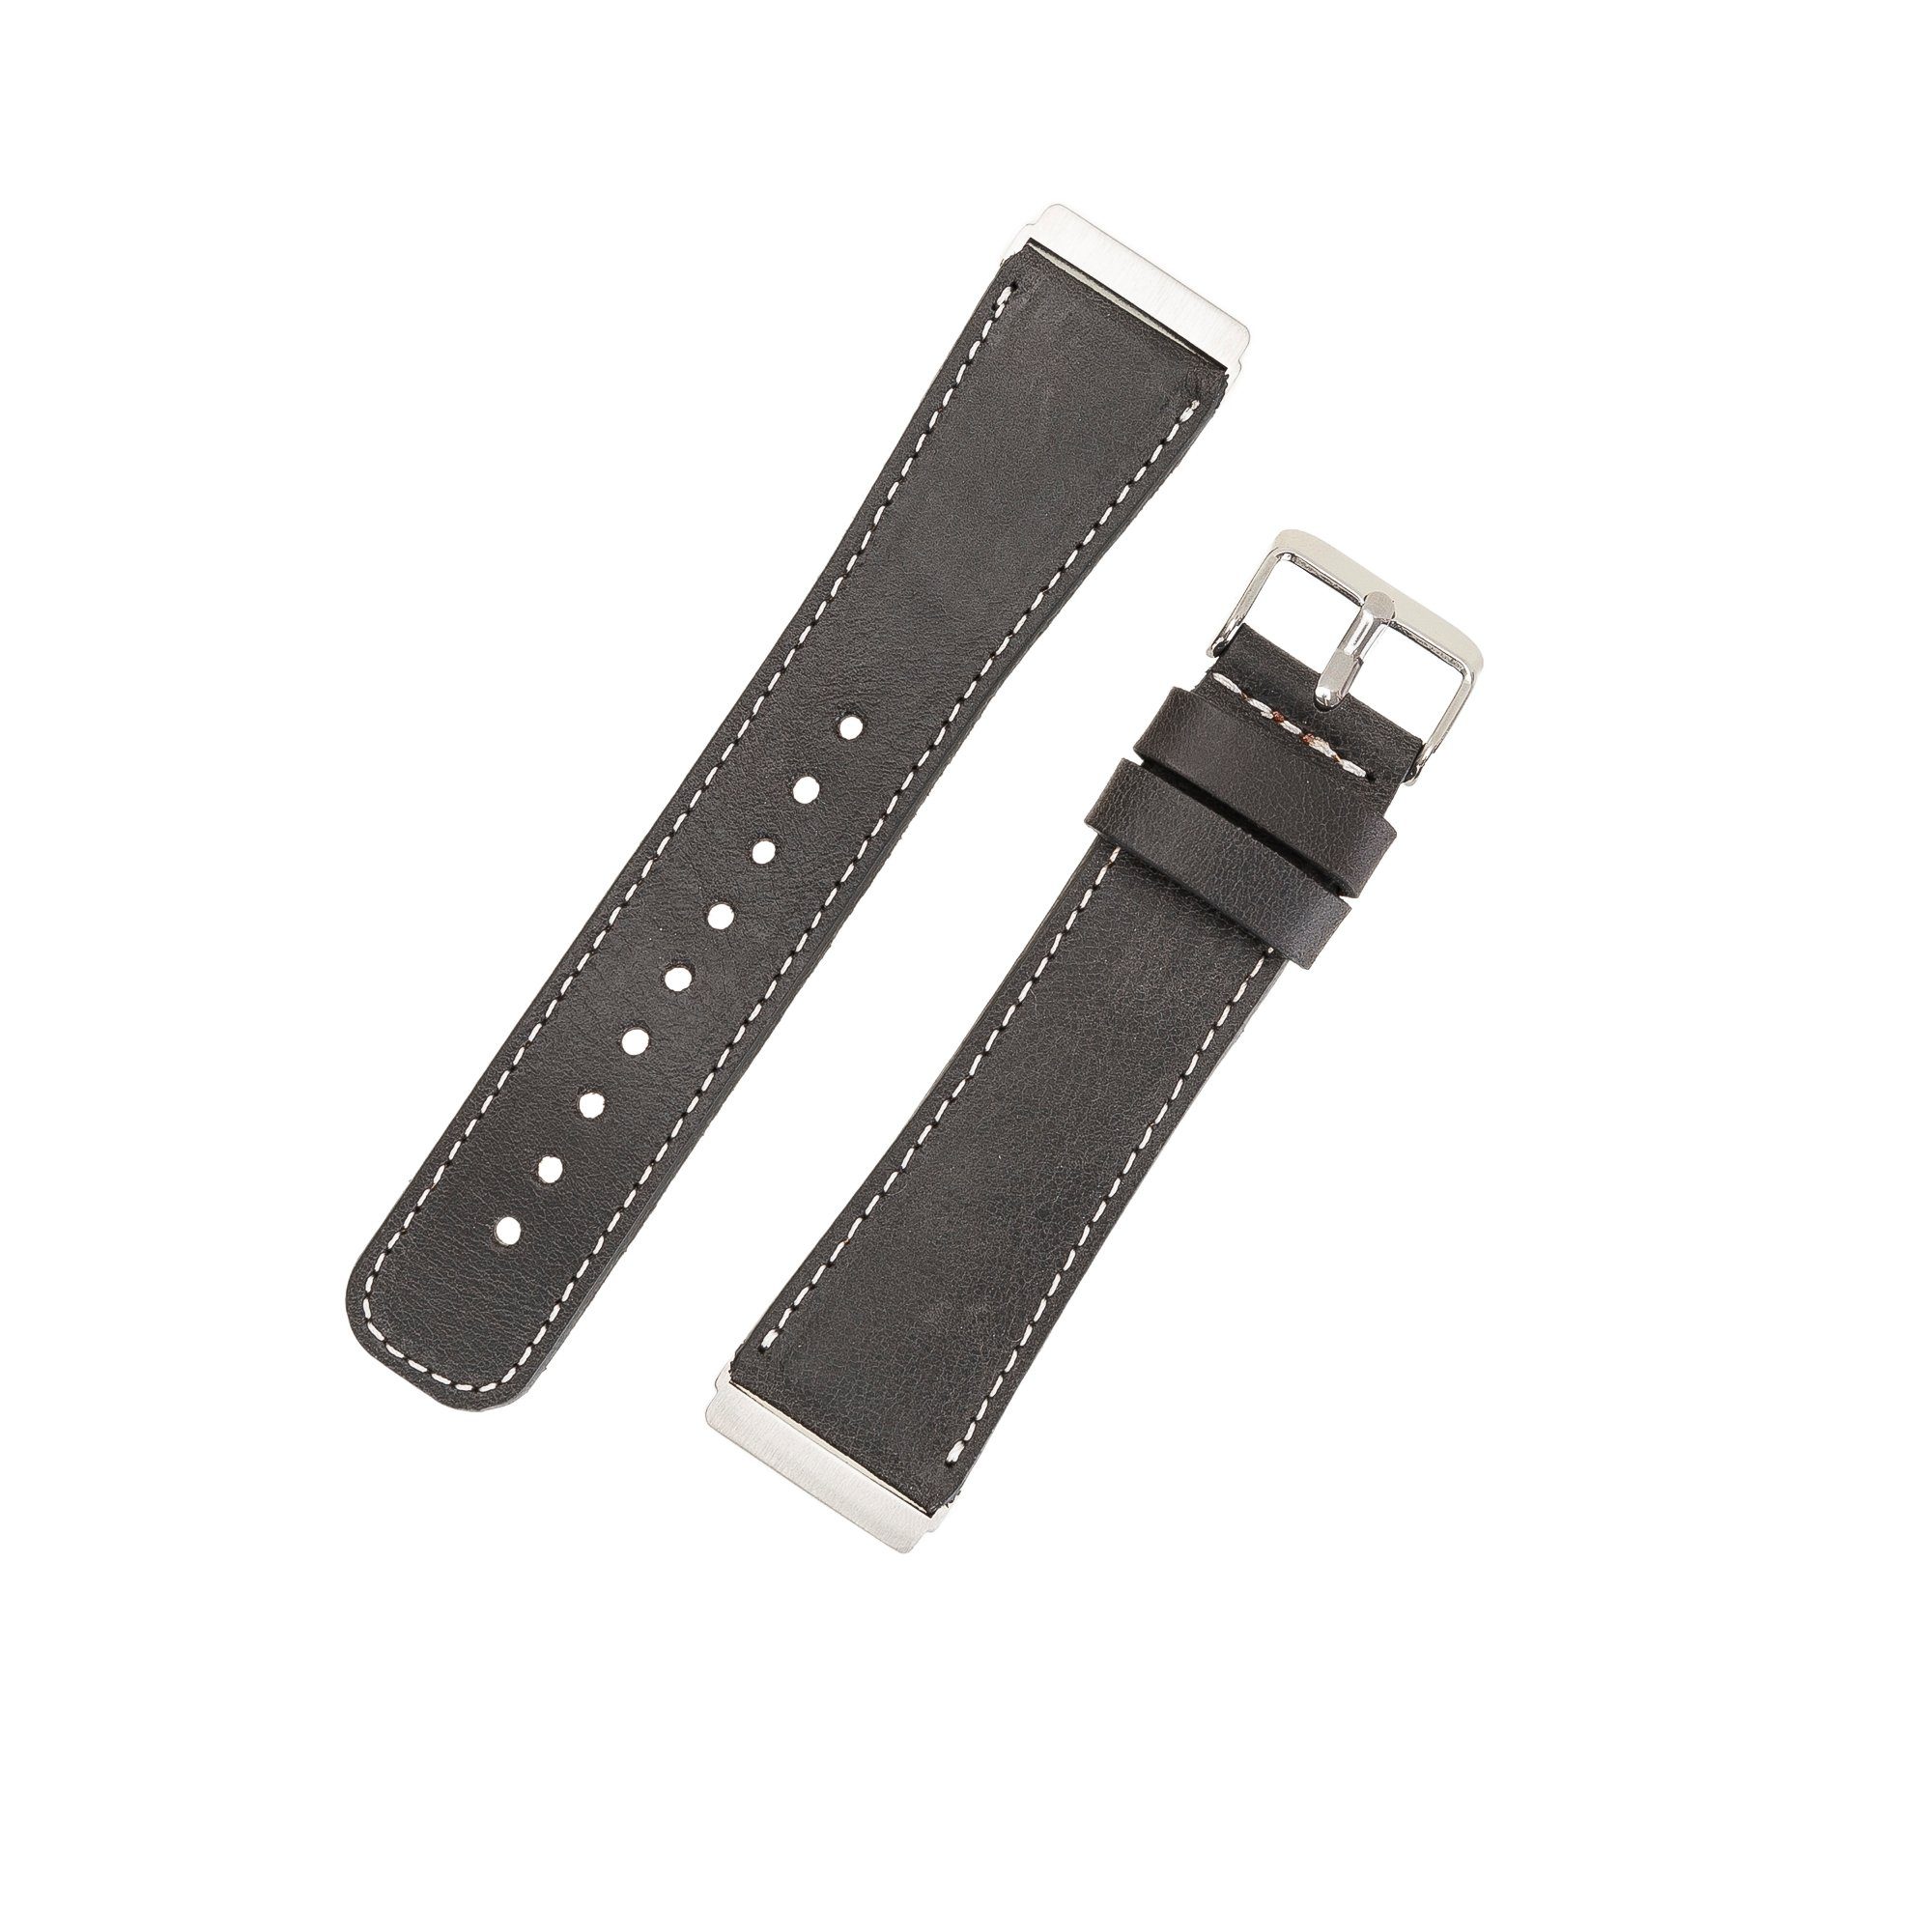 Leder Leather Versa Echtes 3 / Ersatzarmband & Smartwatch-Armband Fitbit 2 4 Dunkelgrau Armband Renna Sense /